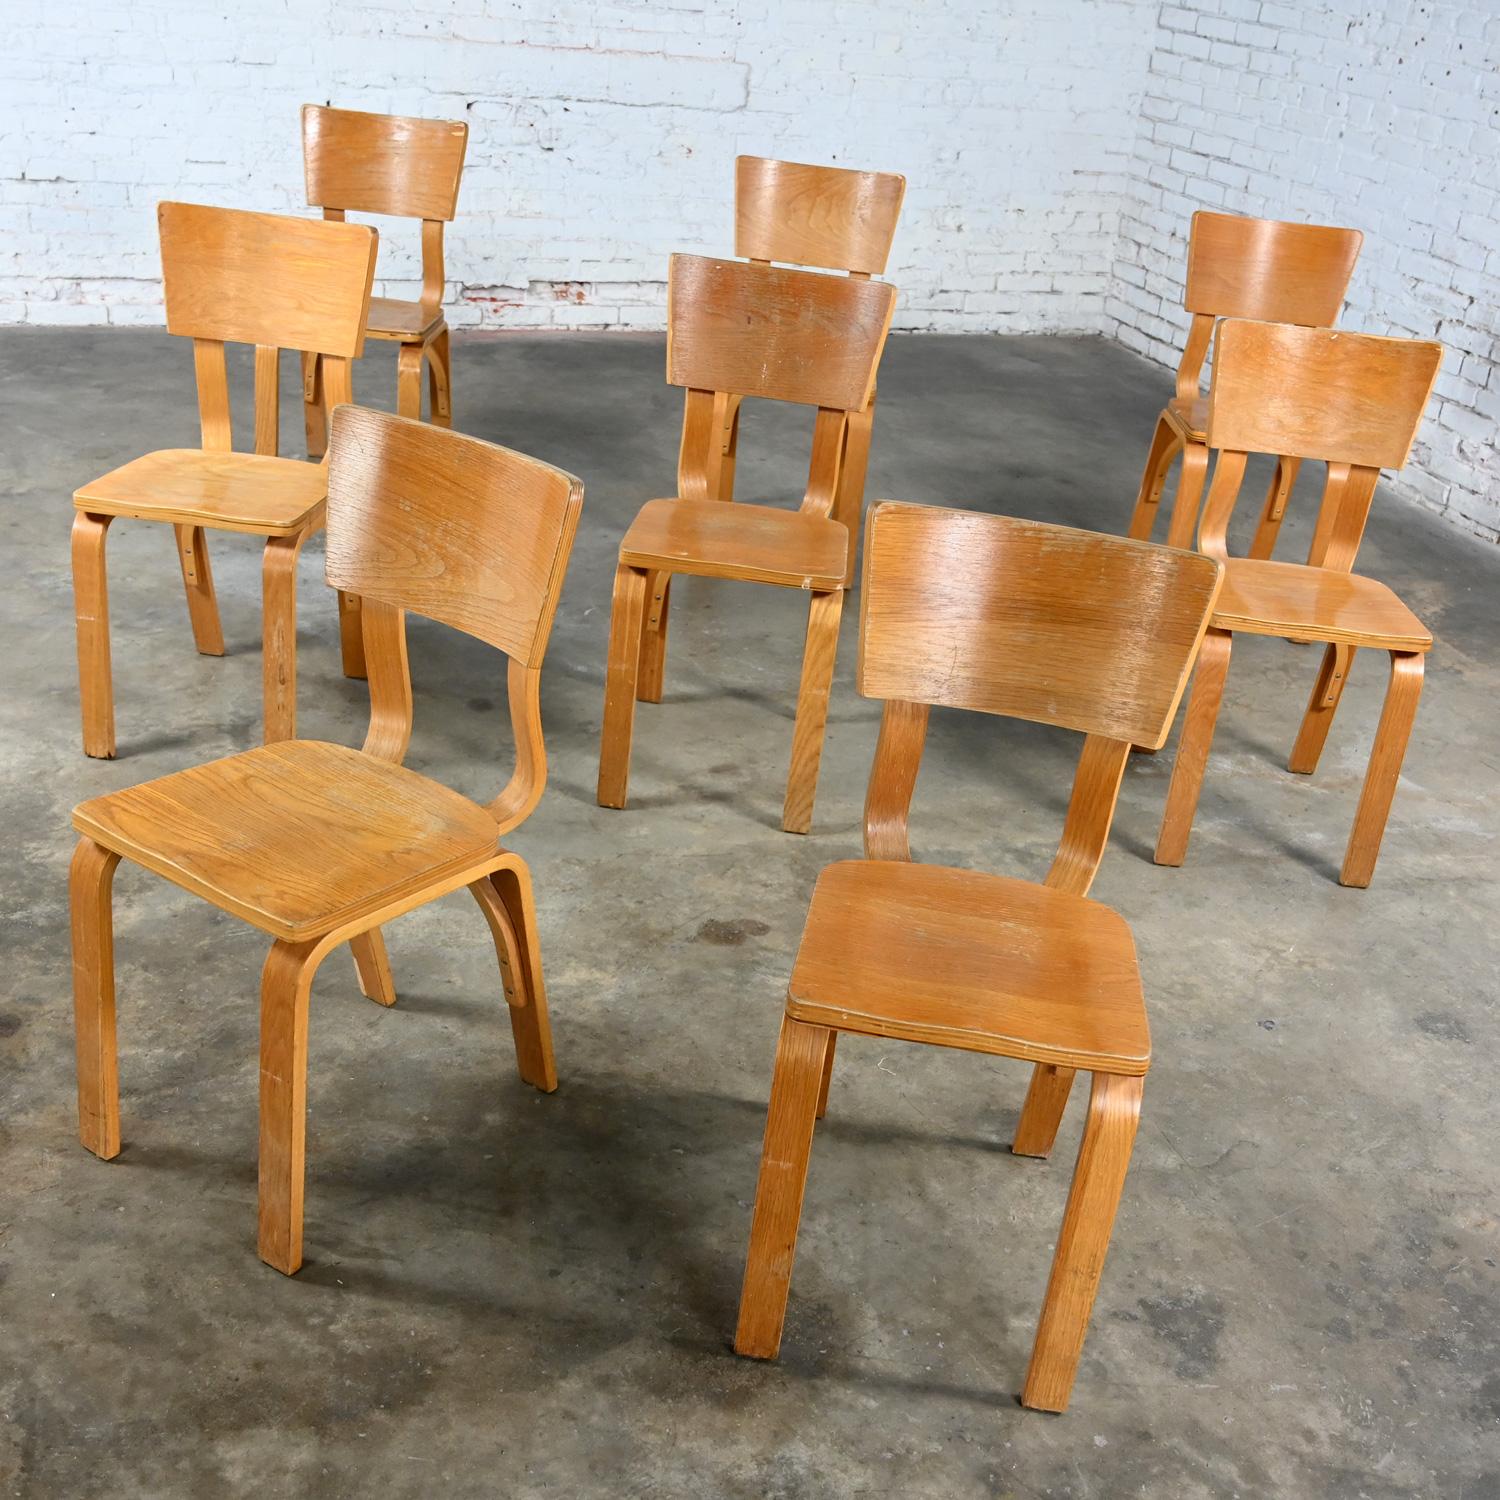 Merveilleuses chaises de salle à manger Thonet #1216-S17-B1 en contreplaqué de chêne courbé avec des sièges en selle et un seul dossier en arc, ensemble de 8. Très bon état, en gardant à l'esprit qu'il s'agit de chaises vintage et non pas neuves et